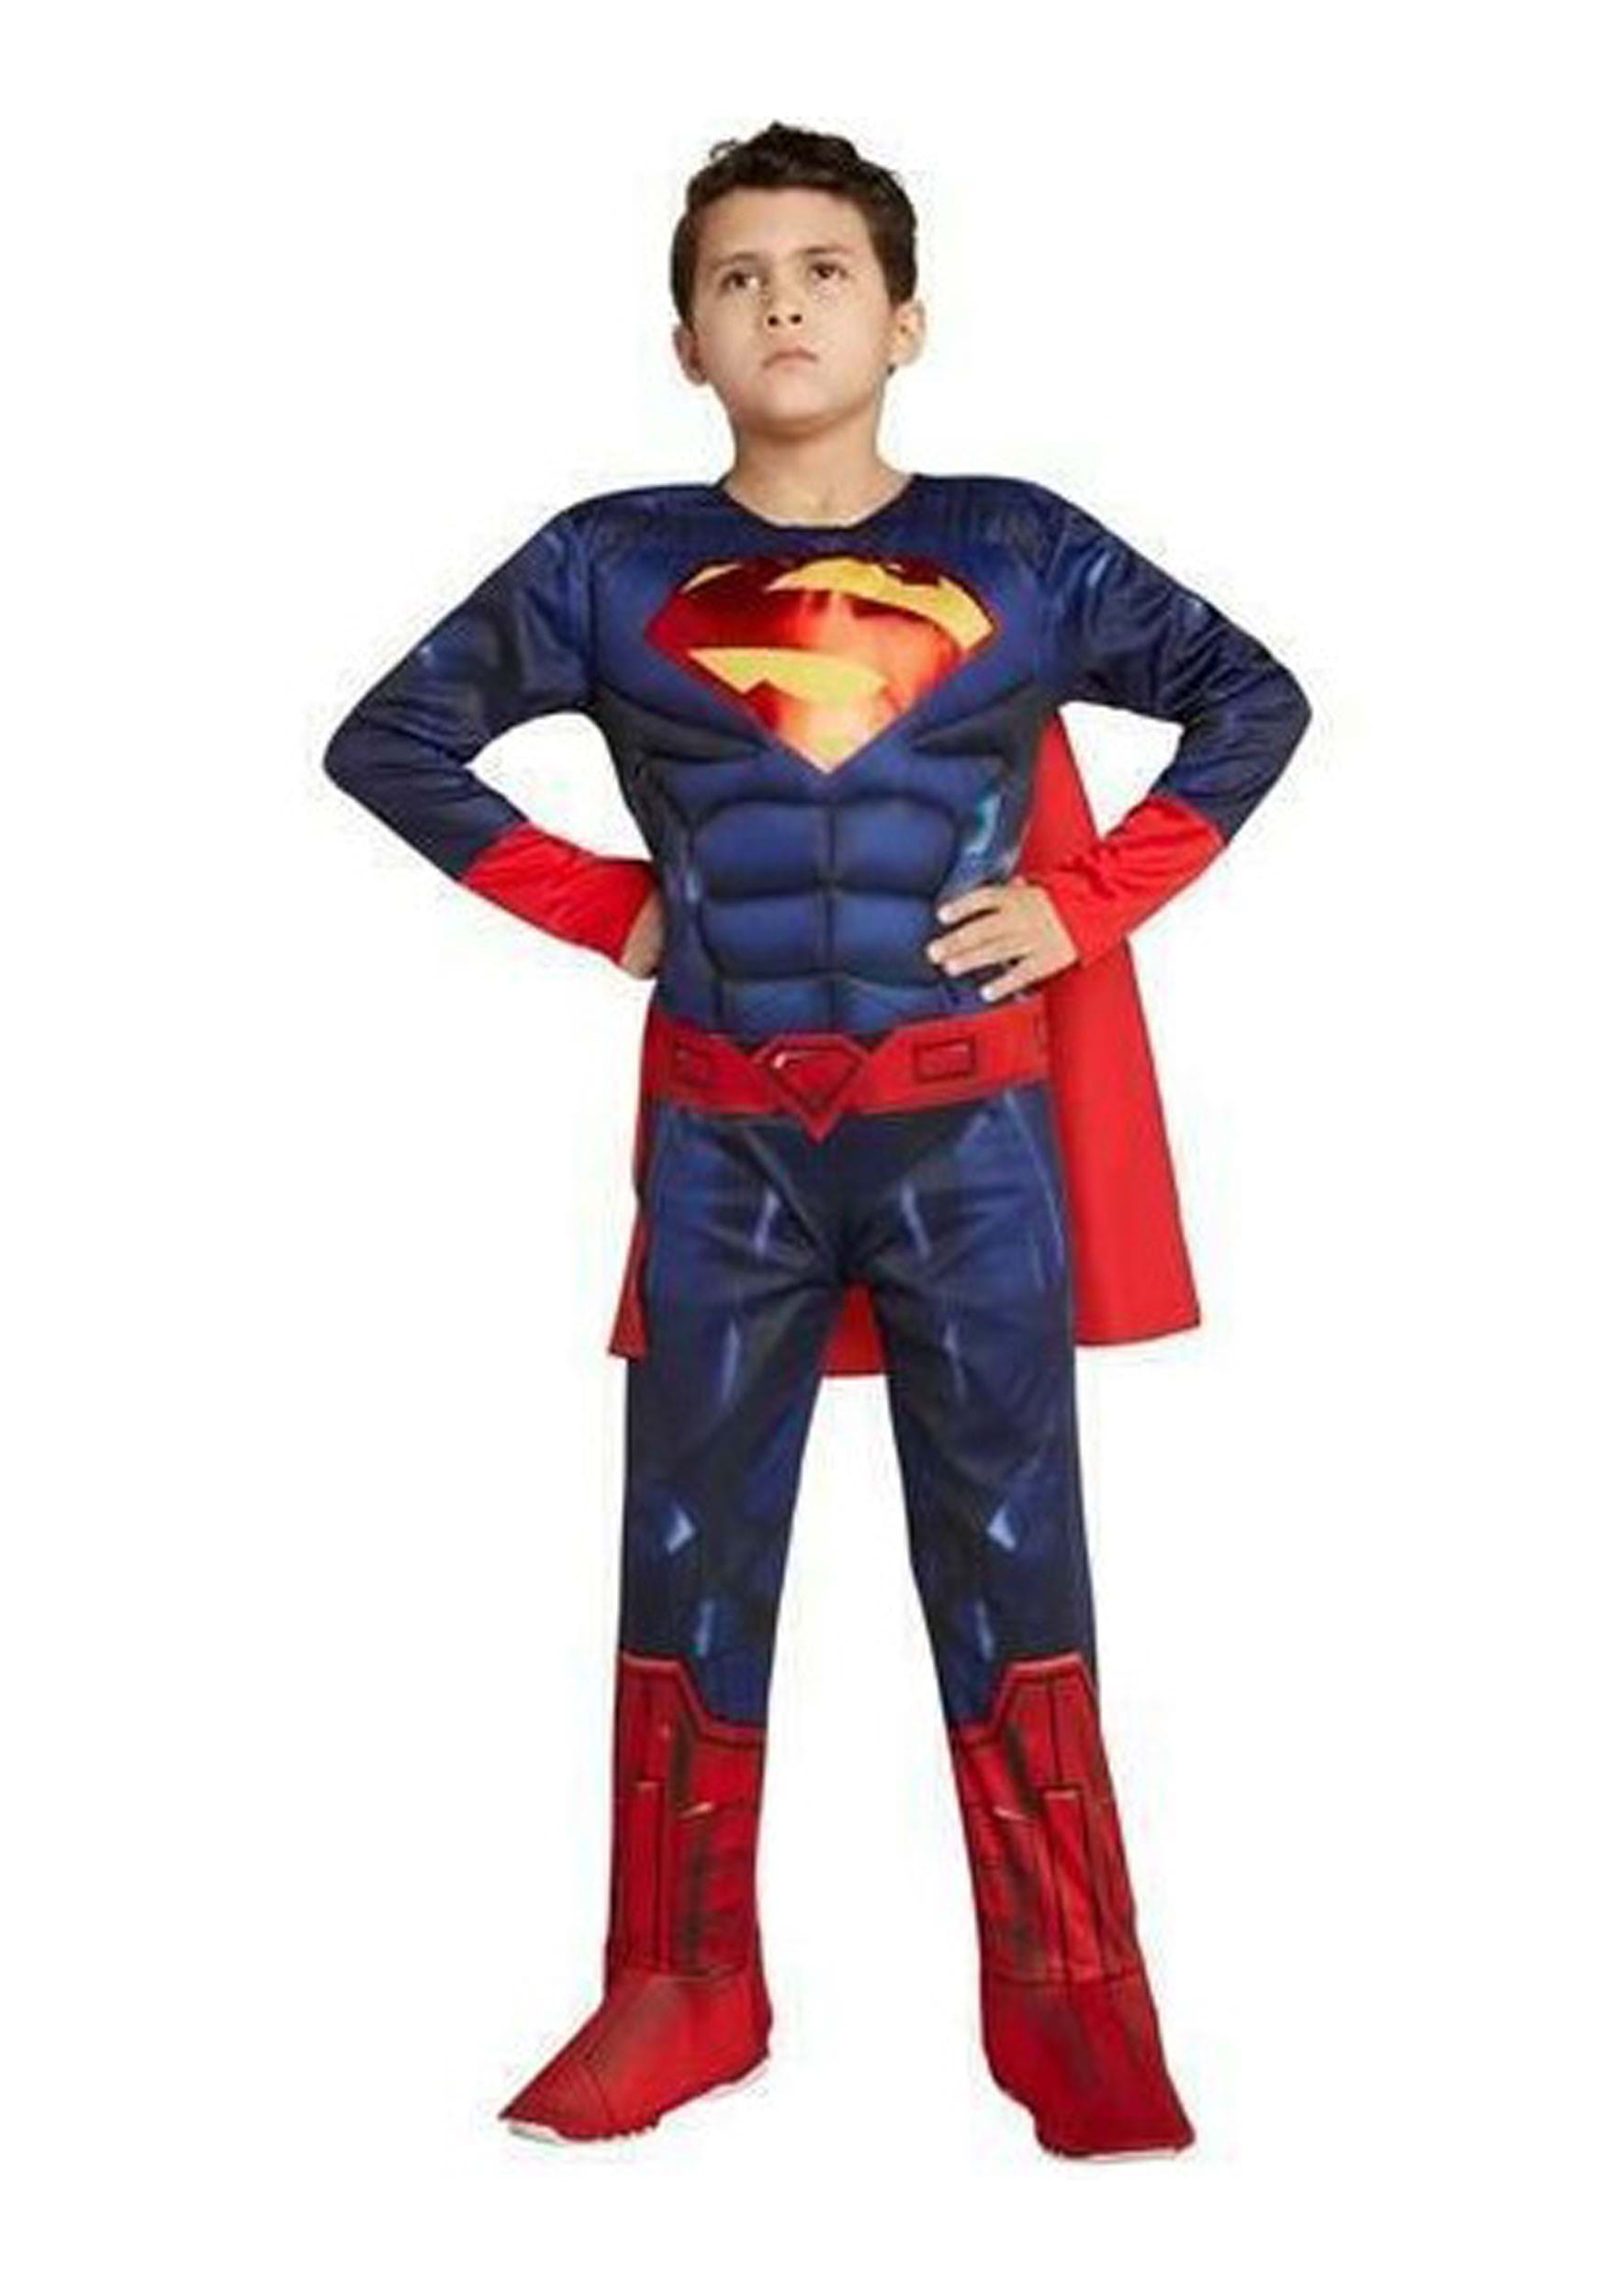 Justice League Superman Kids Costume